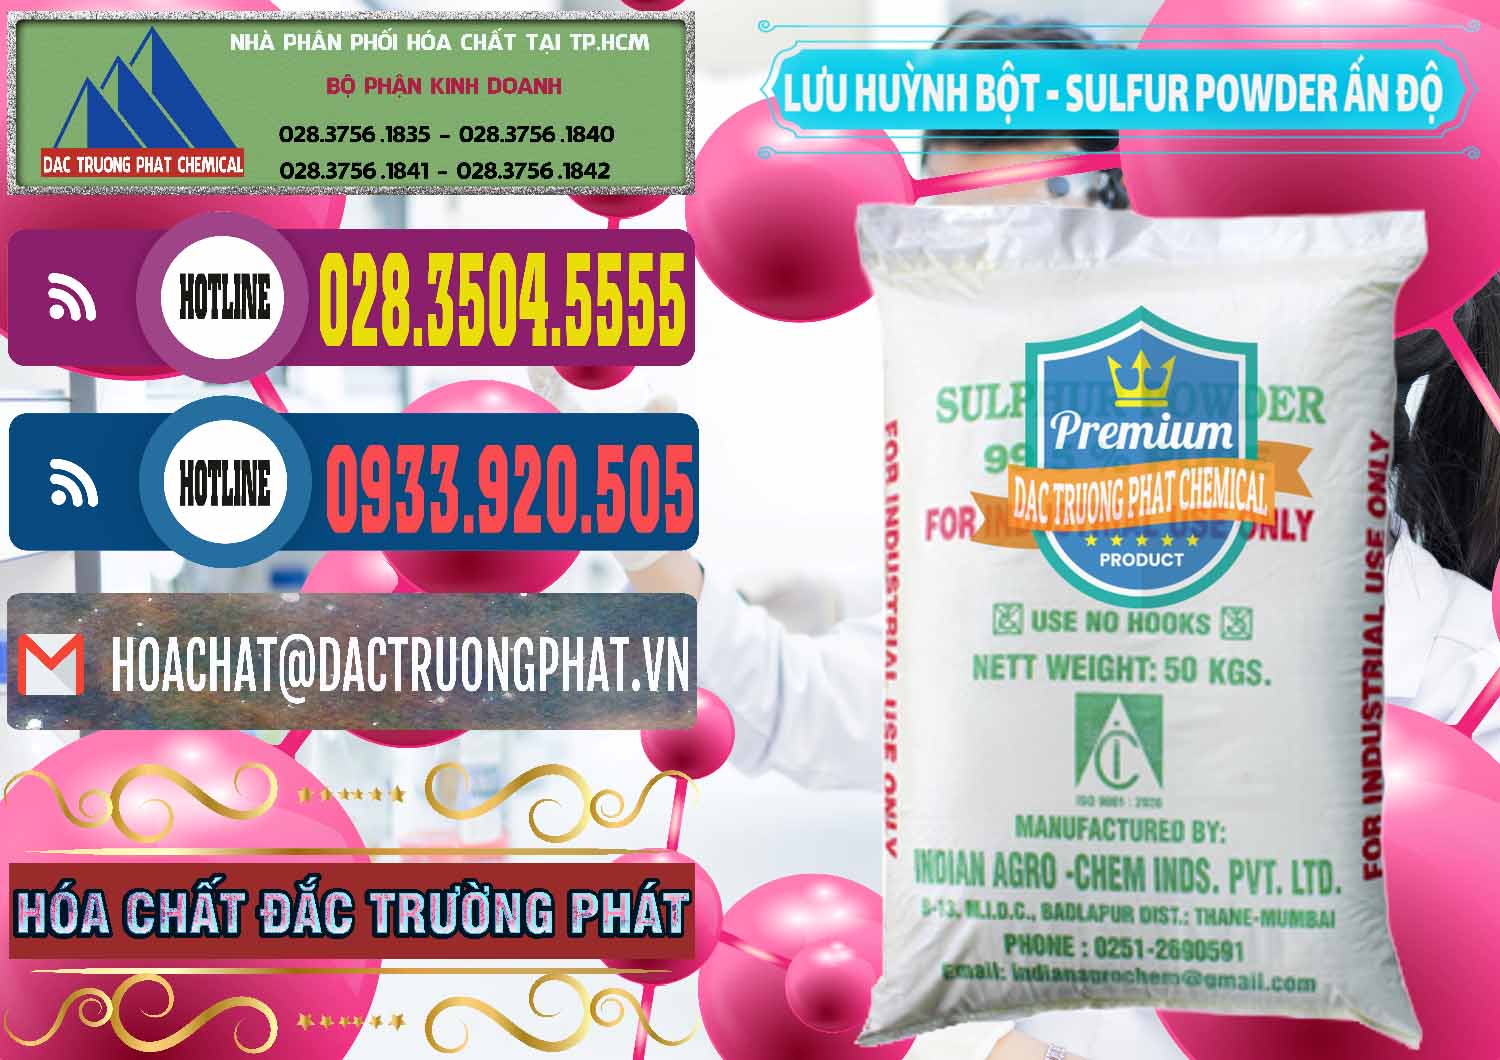 Chuyên cung cấp & bán Lưu huỳnh Bột - Sulfur Powder Ấn Độ India - 0347 - Cty chuyên cung cấp và bán hóa chất tại TP.HCM - muabanhoachat.com.vn